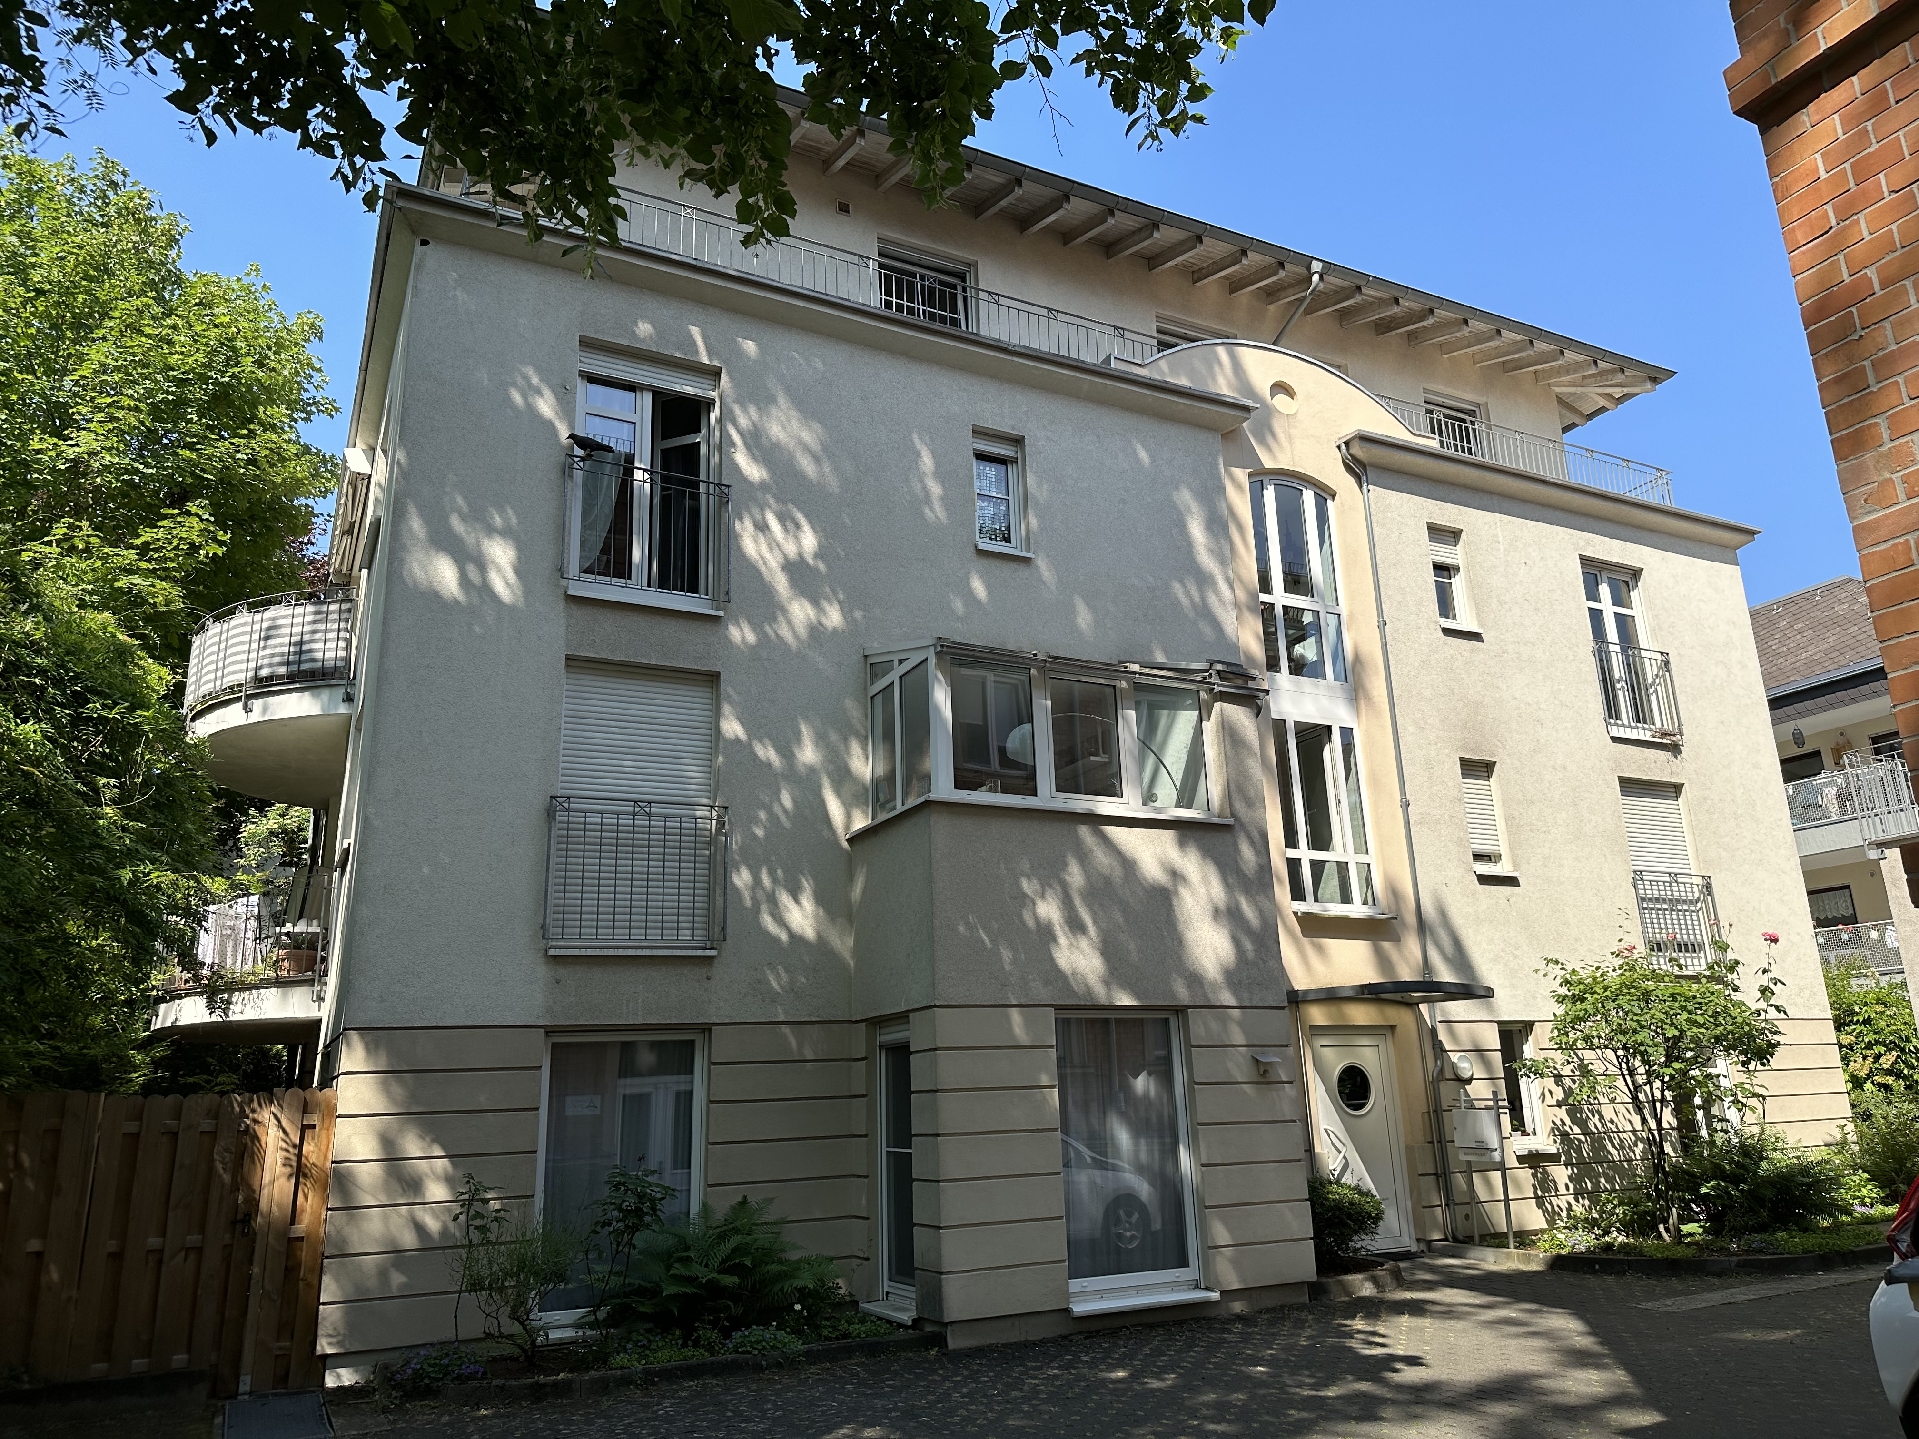 Wiesbaden-Dichterviertel! Kapitalanlage! Helle Penthouse-Wohnung mit umlaufendem Balkon!